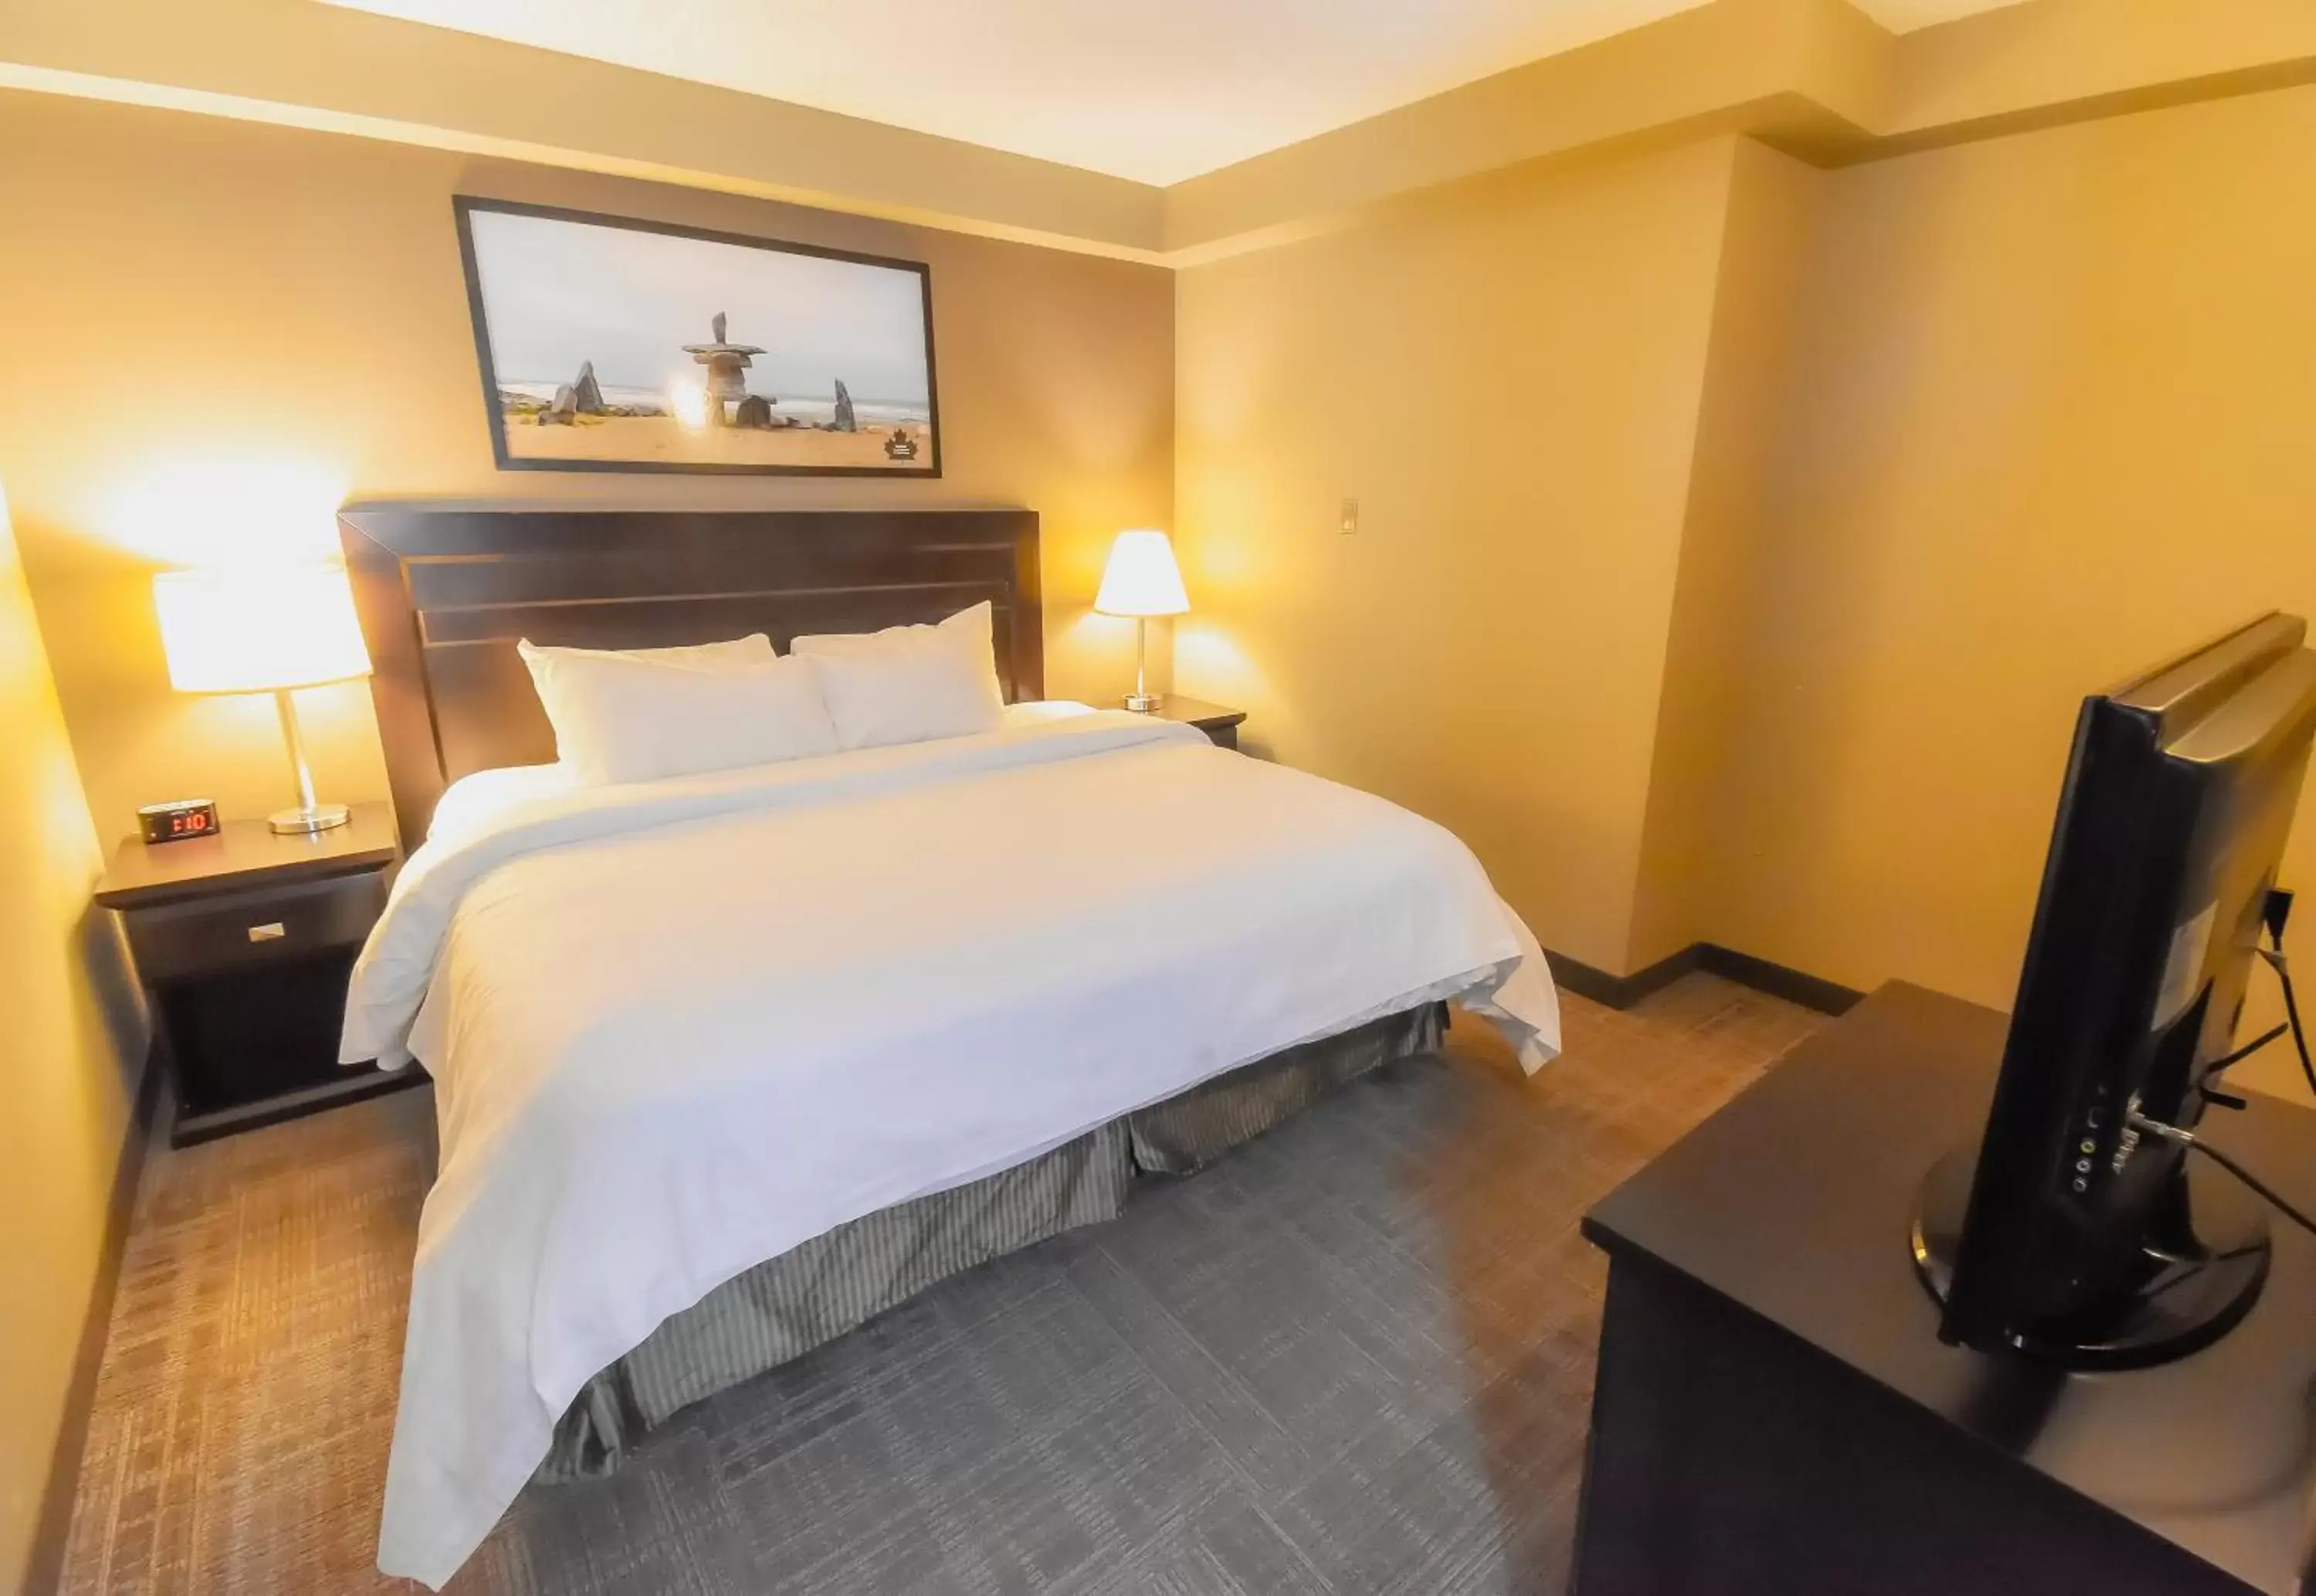 Bedroom in Canad Inns Destination Centre Transcona